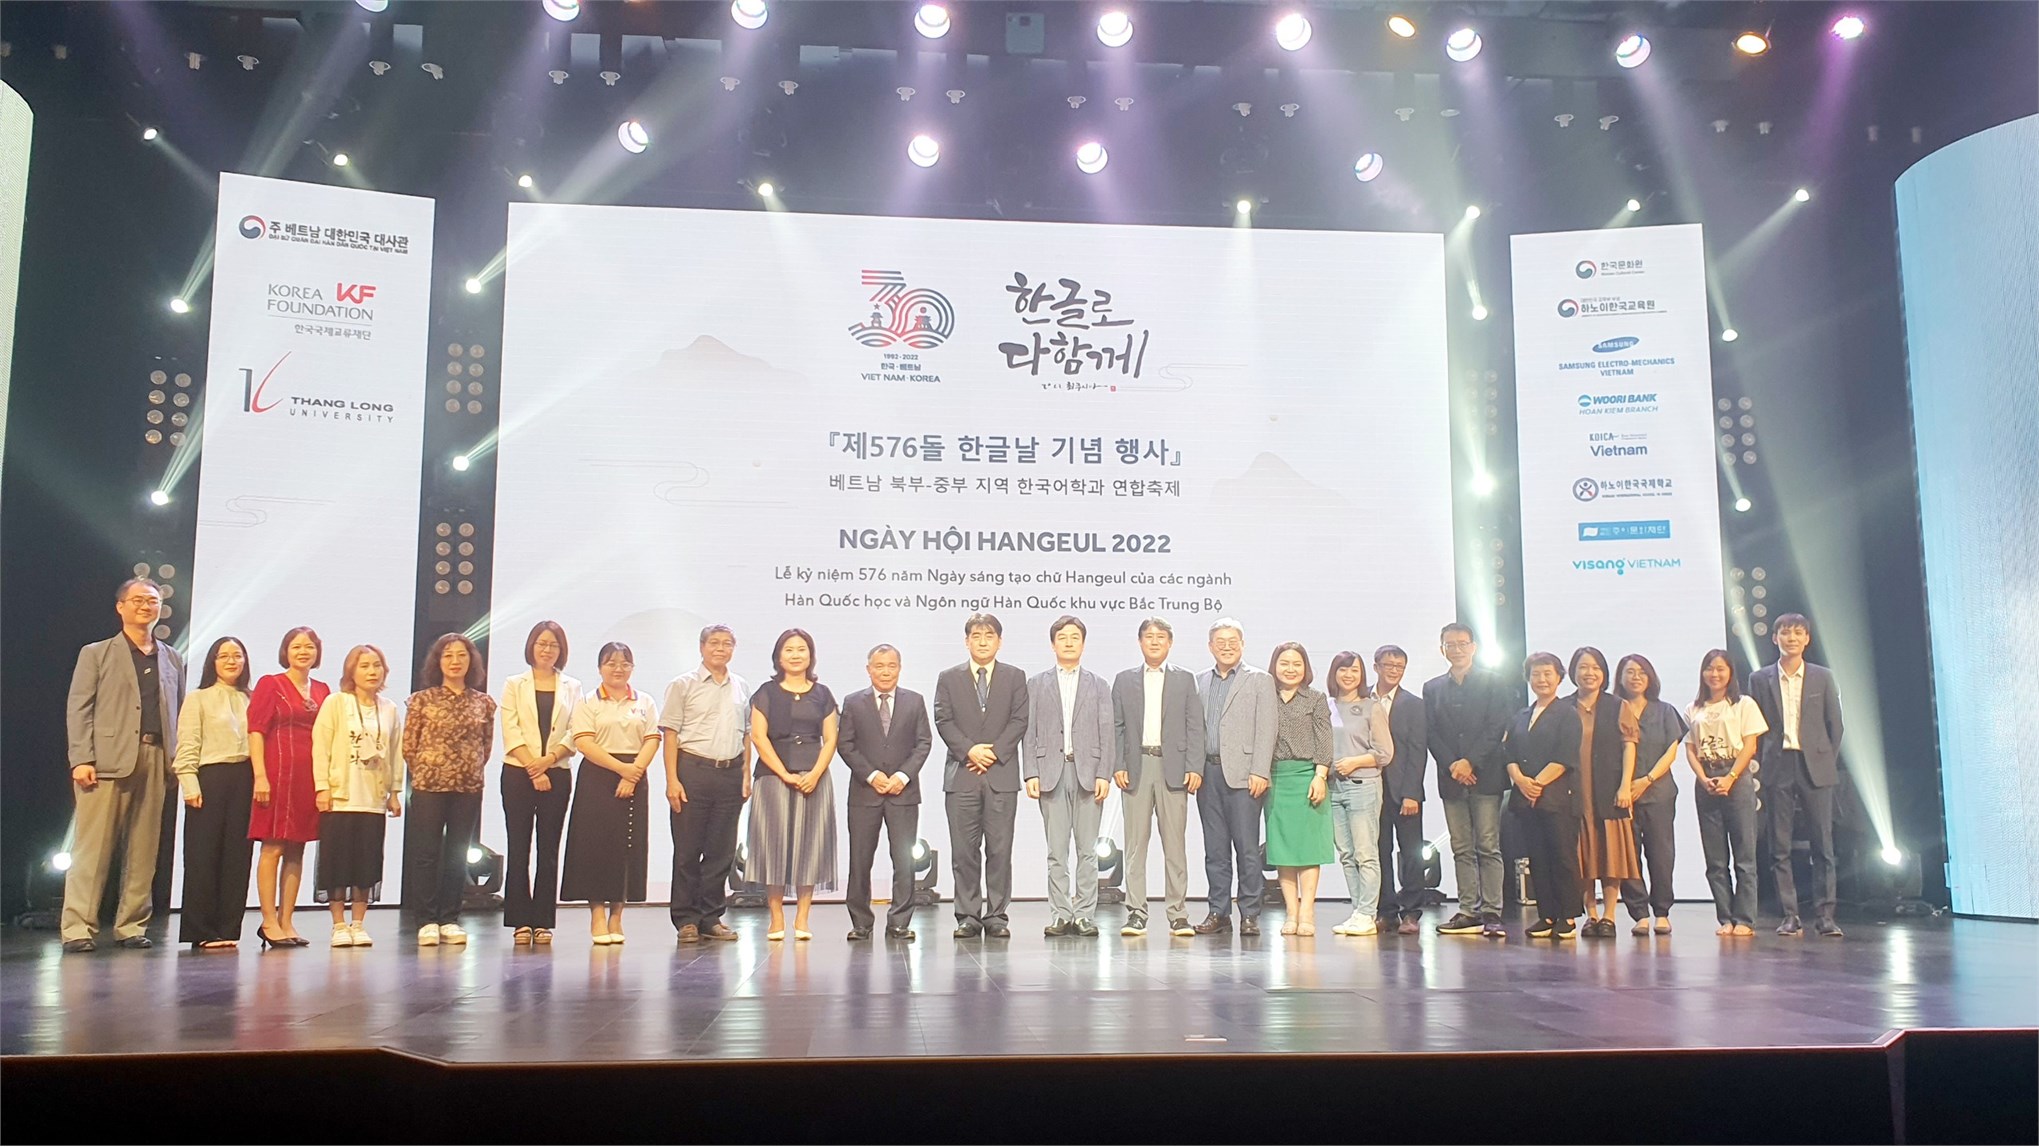 Sinh viên Khoa Ngôn ngữ Hàn Quốc tham gia ngày hội Hangeul 2022 được tổ chức tại Đại học Thăng Long